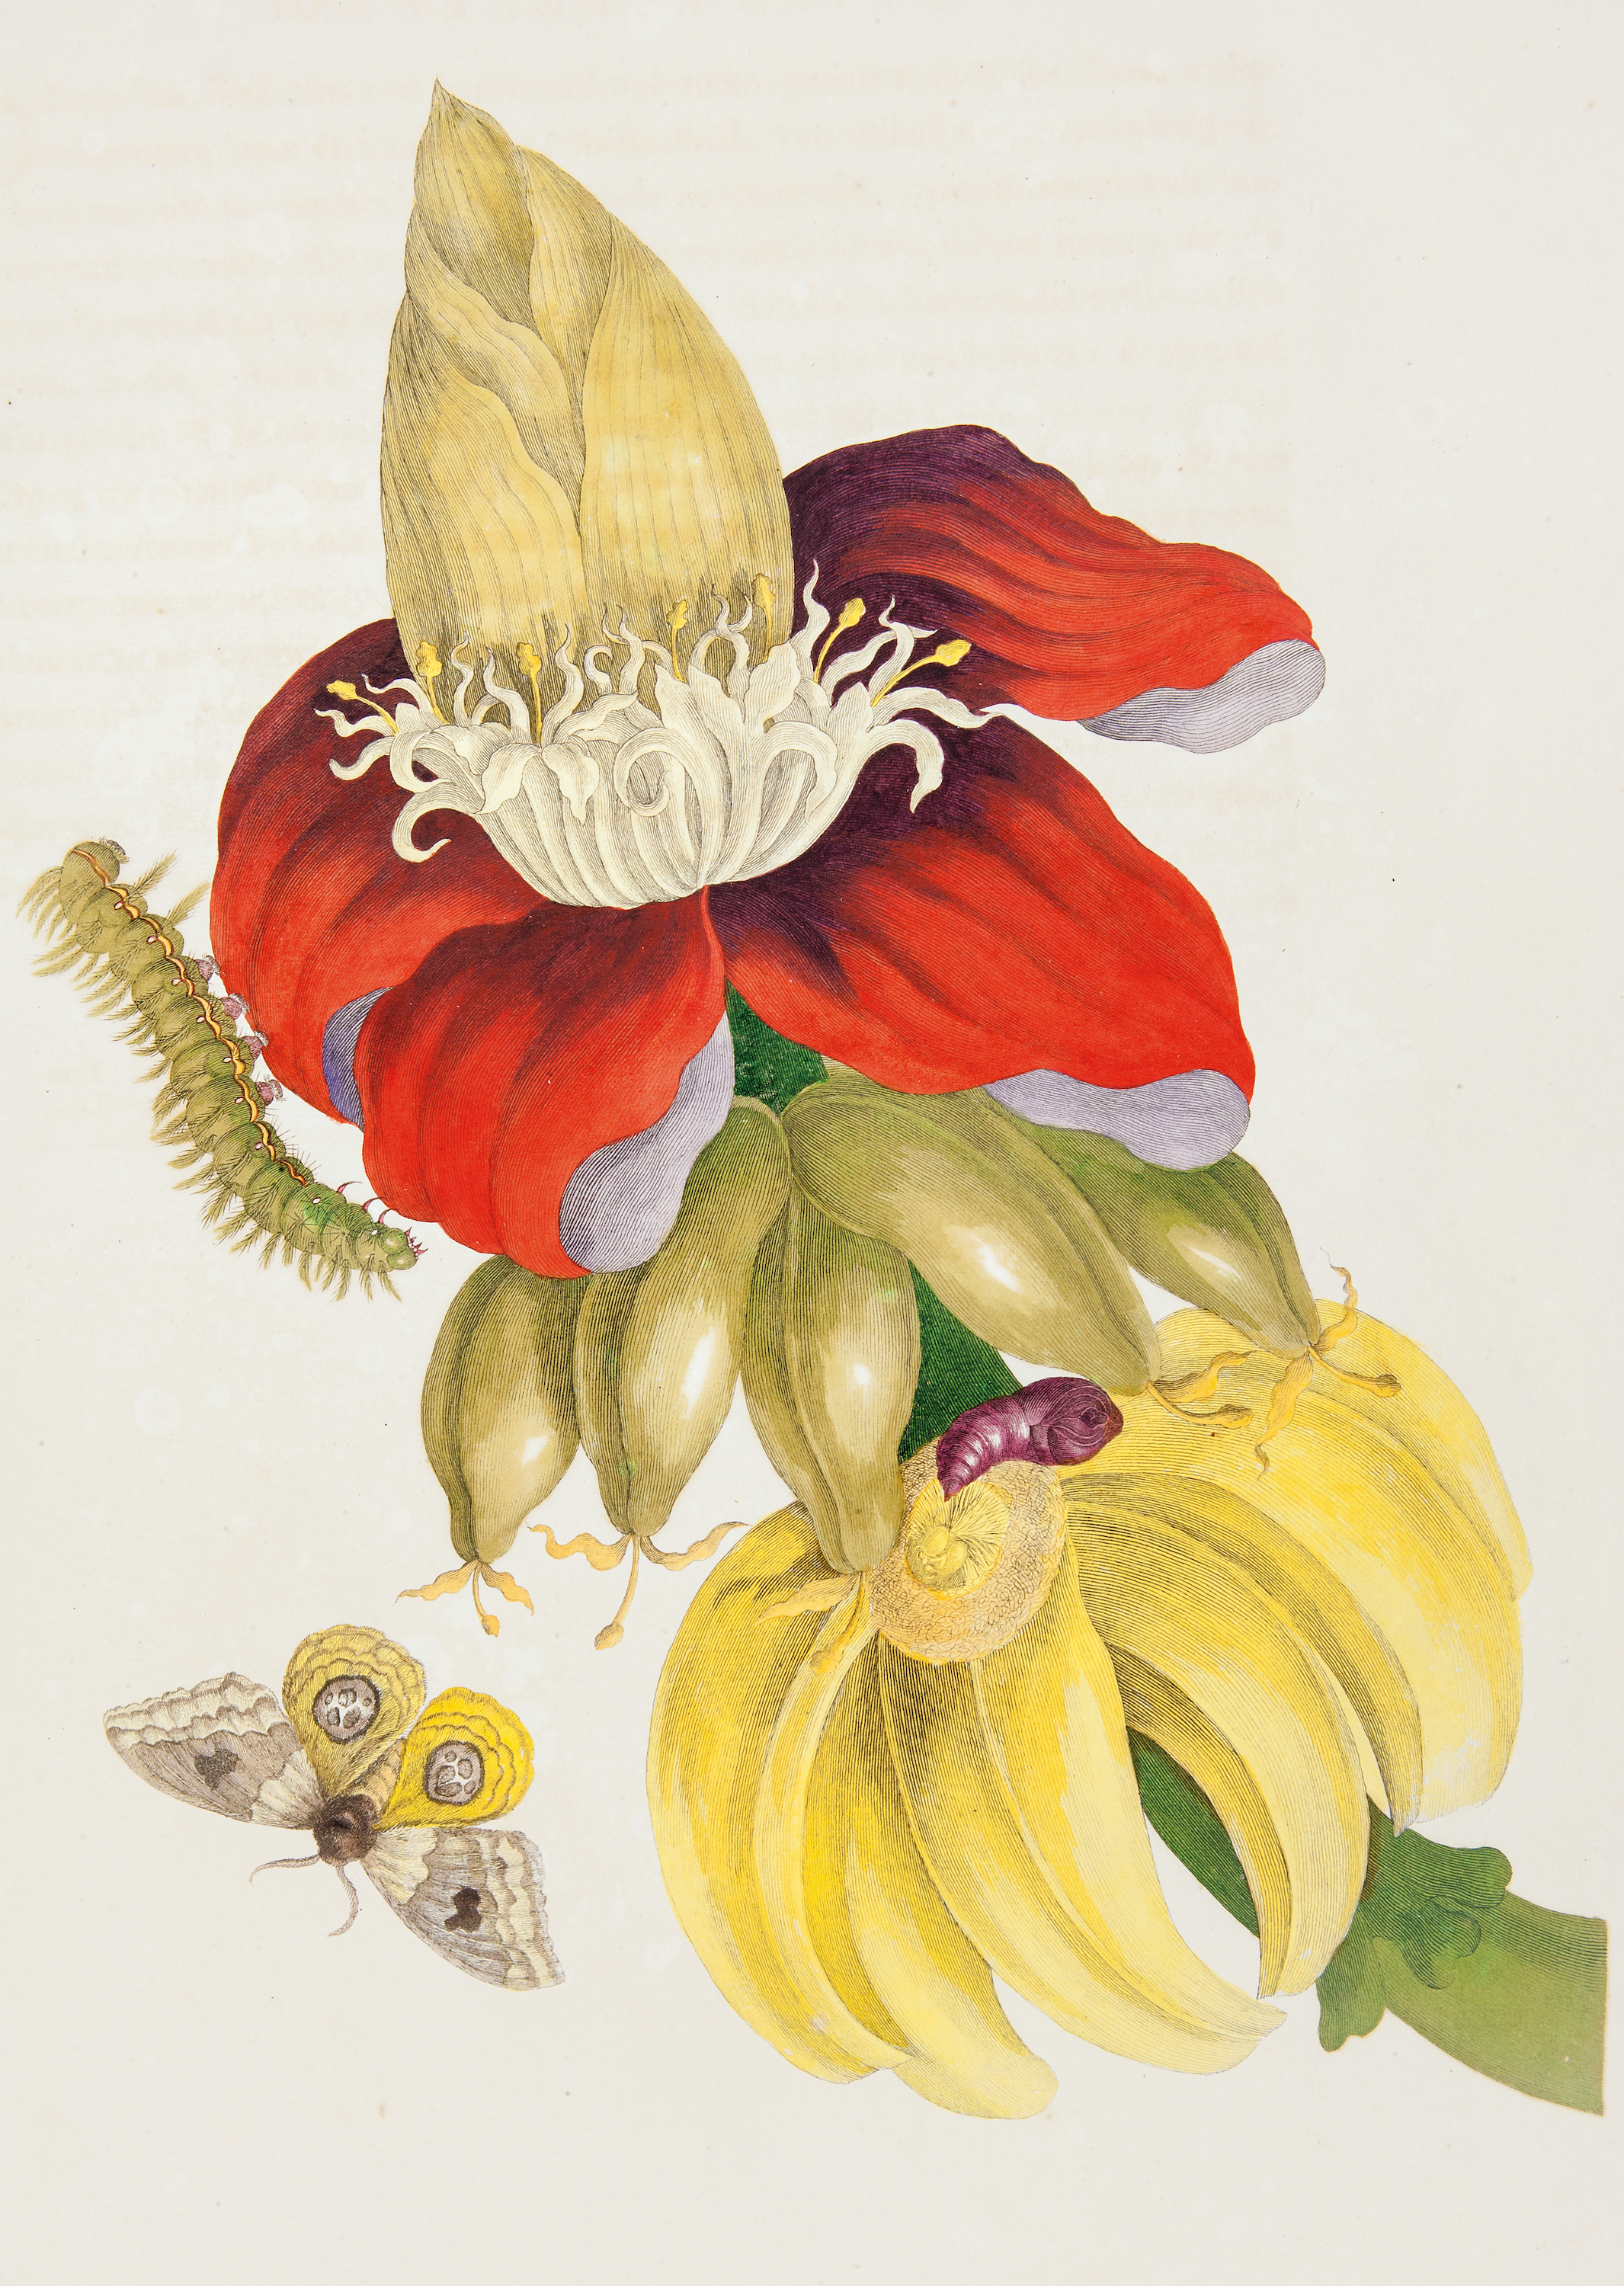 Plantă de banană și stadiile de viață ale unei molii țintate by Pieter Sluyter after Maria Sibylla Merian - 1705 